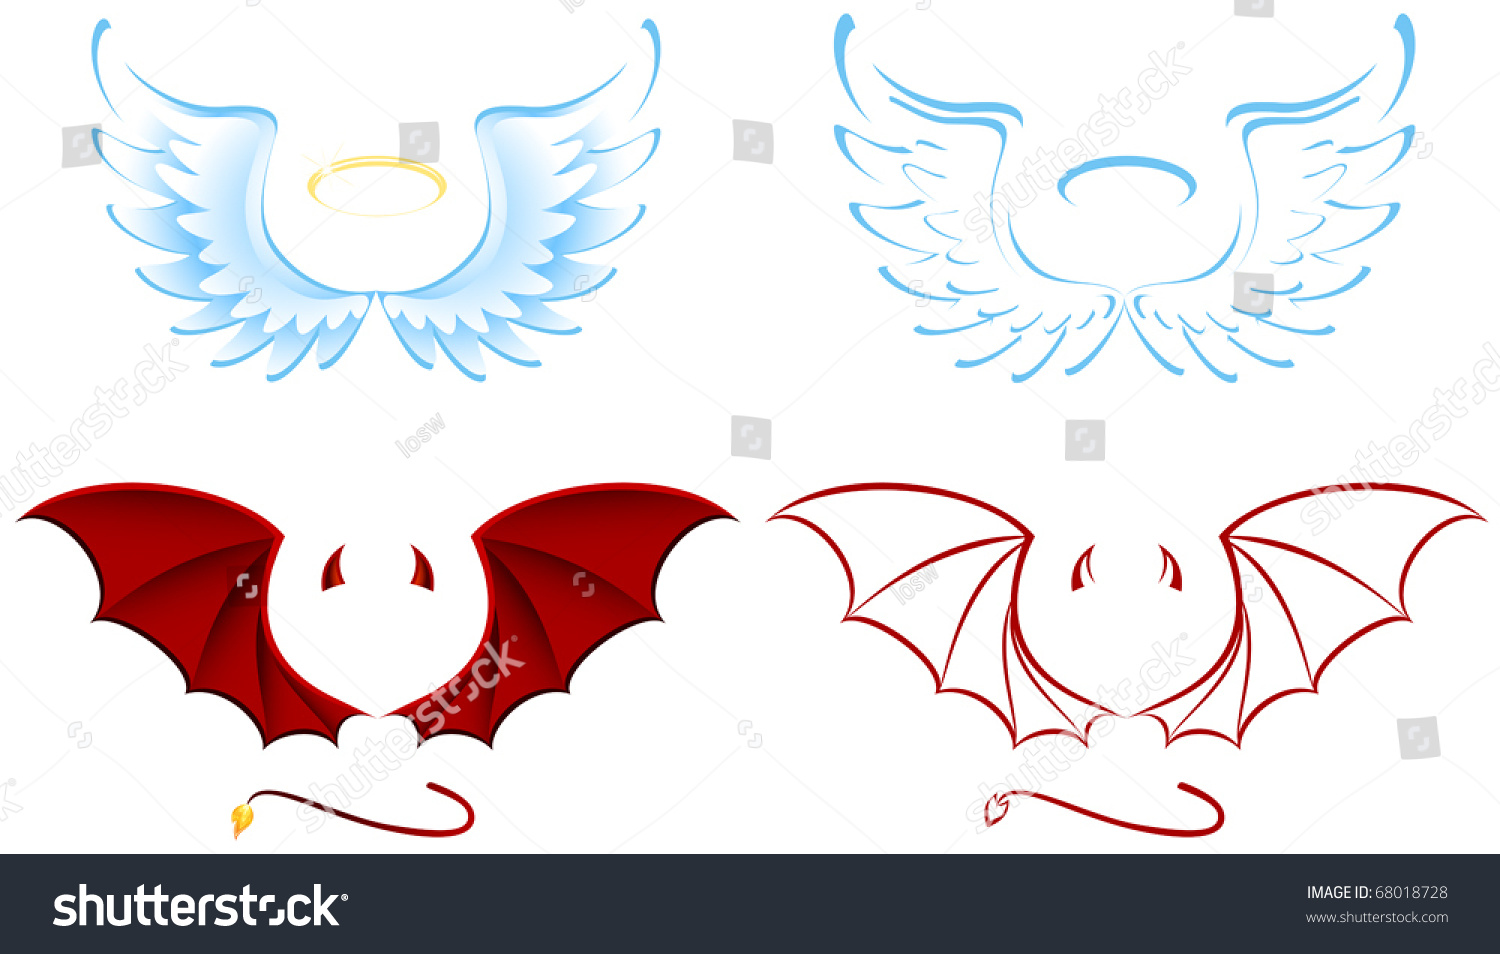 SVG of Angel and Devil wings, illustration svg